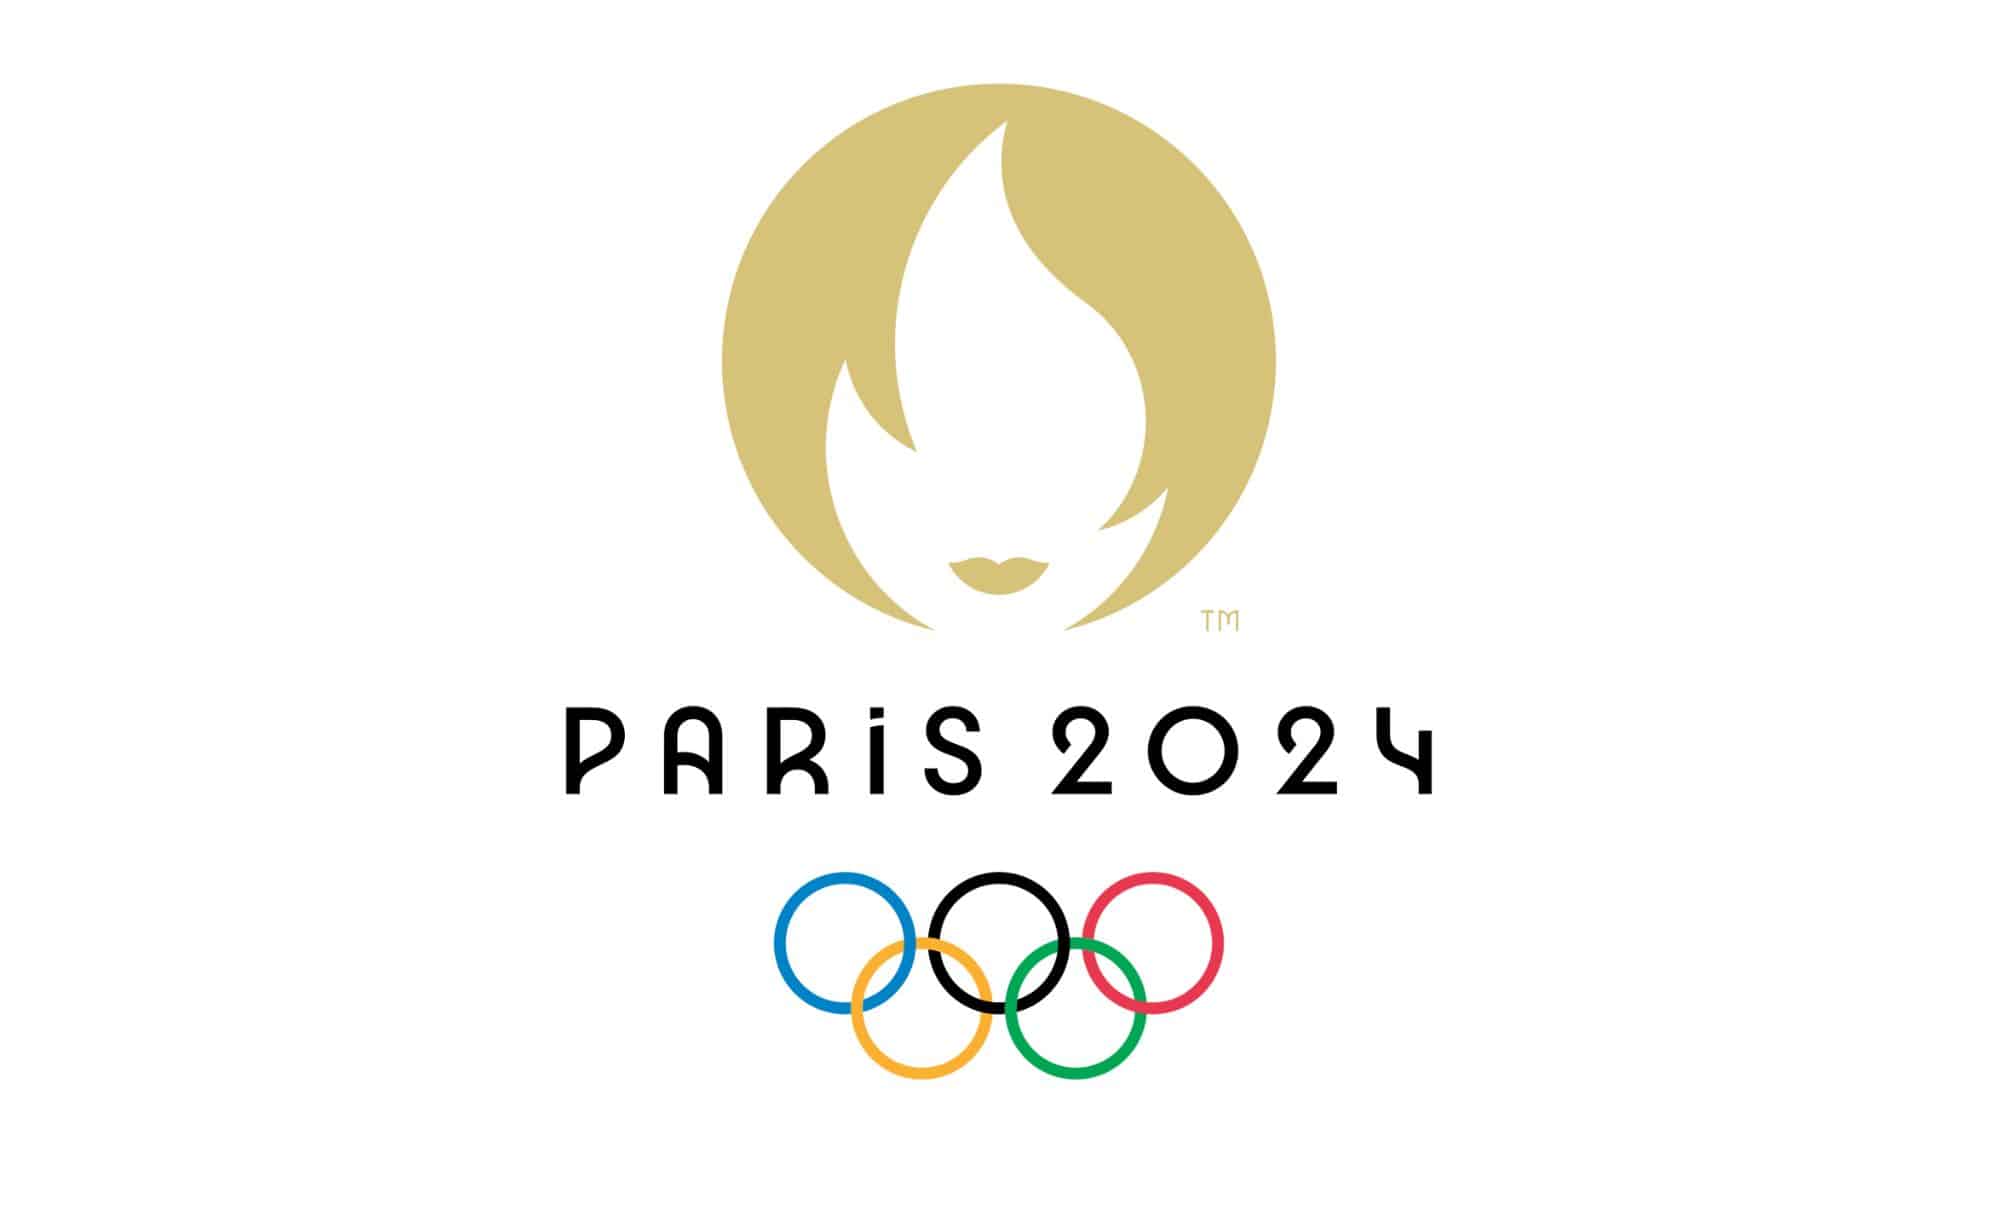 Shapers-Club- Logo des Jeux olympiques de Paris 2024 comportant une flamme dorée stylisée au-dessus des mots « Paris 2024 » et les anneaux olympiques aux couleurs traditionnelles. -surfshop-surfboard